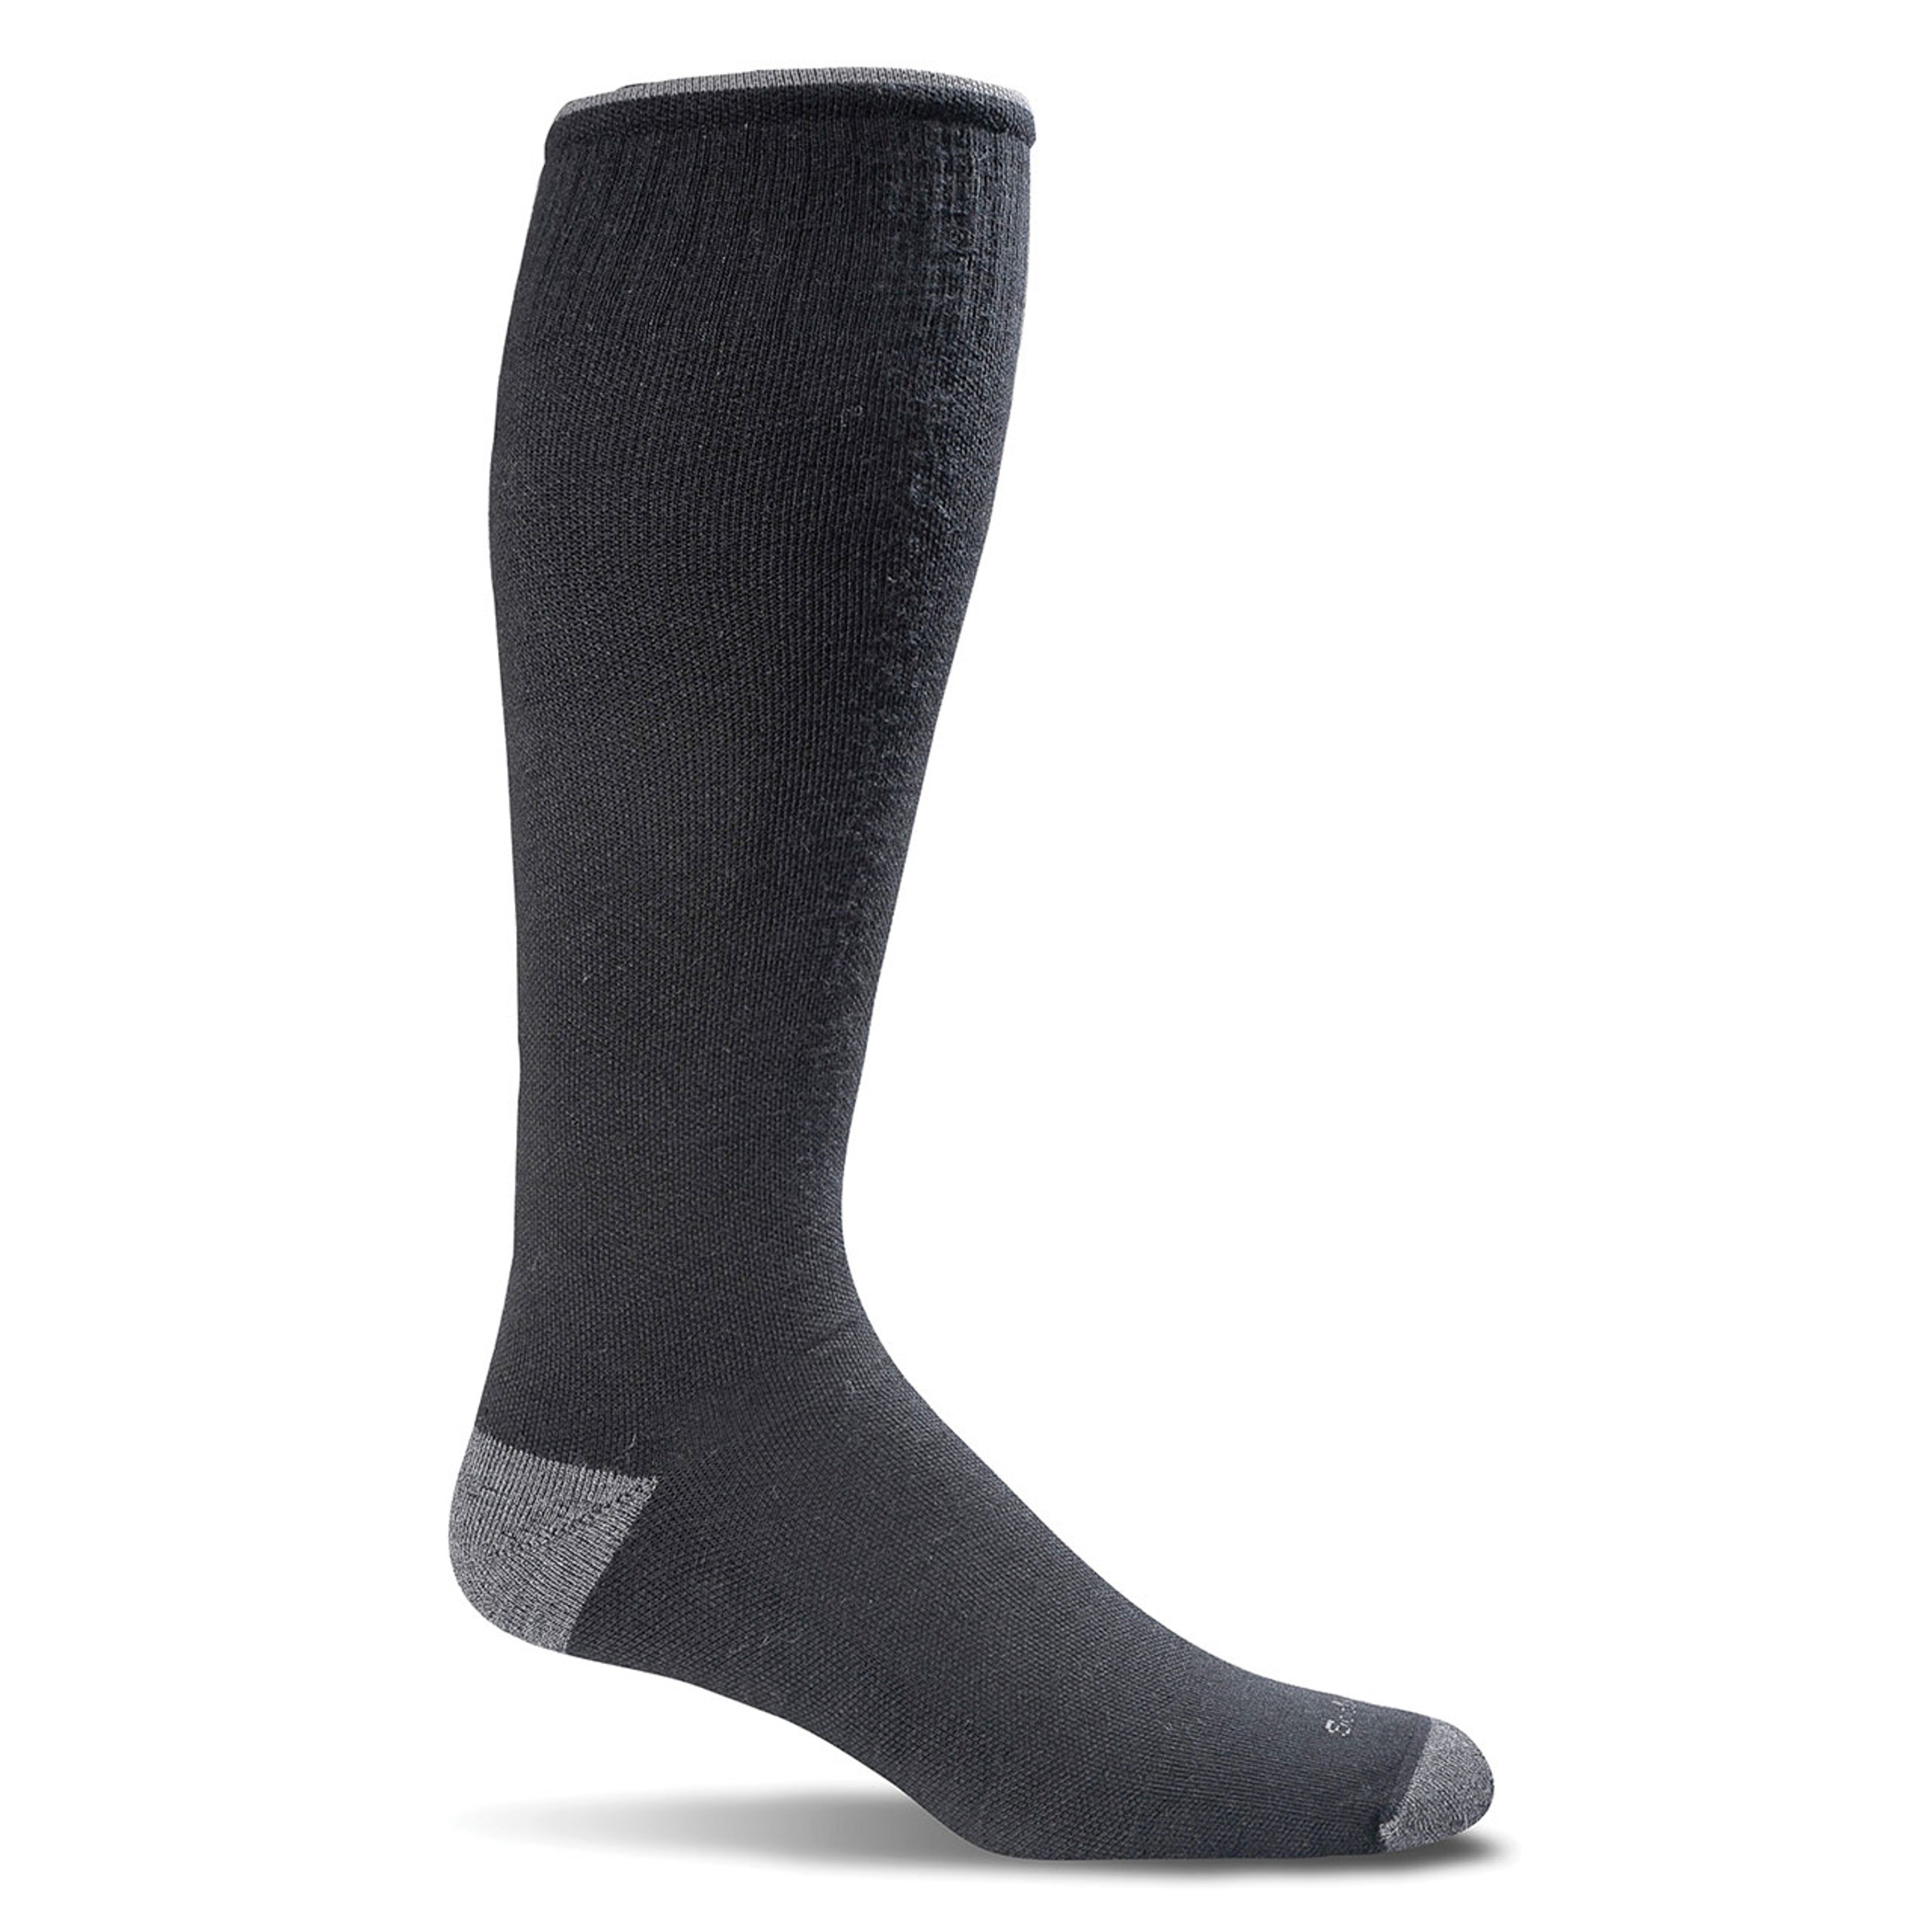 Men's Elevation Compression Socks at Sportif